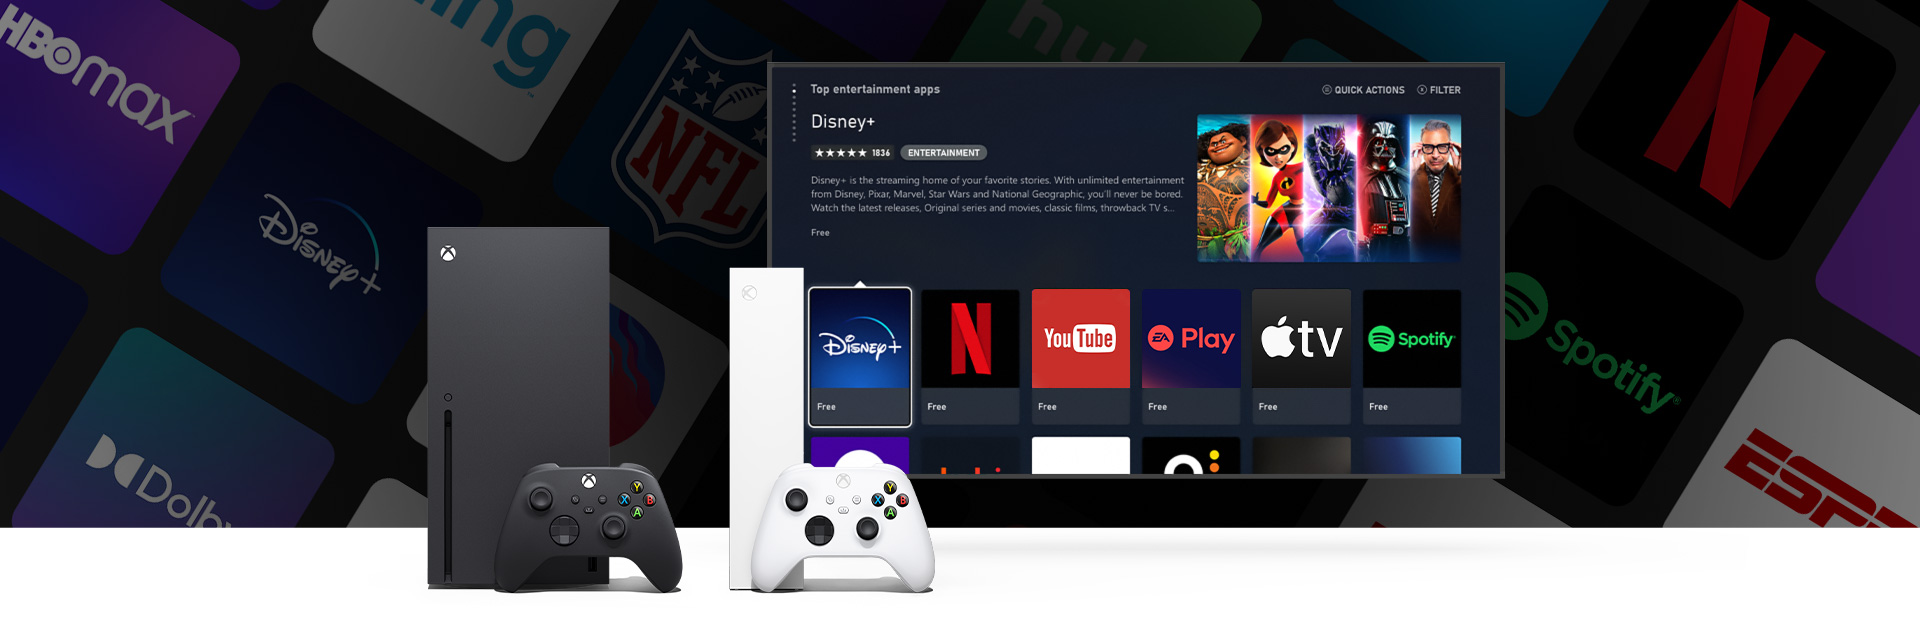 Xbox Series X i Series S z kontrolerami przed ekranem telewizora z interfejsem użytkownika i wieloma dostępnymi aplikacjami.